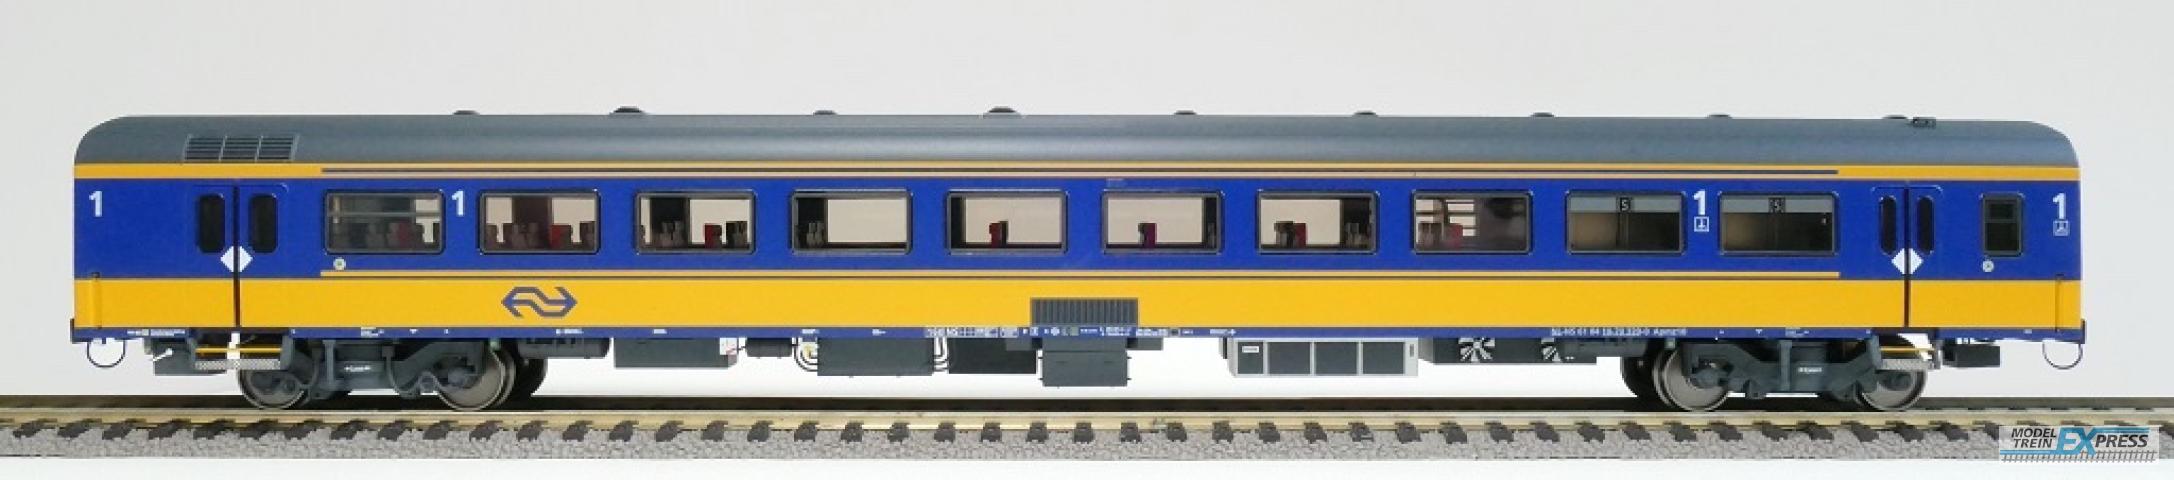 Exact-train 11006 NS ICRm Amsterdam - Rotterdam für den Inlandseinsatz Reisezugwagen Apmz10 (Farbe Gelb / Blau), Ep. VI